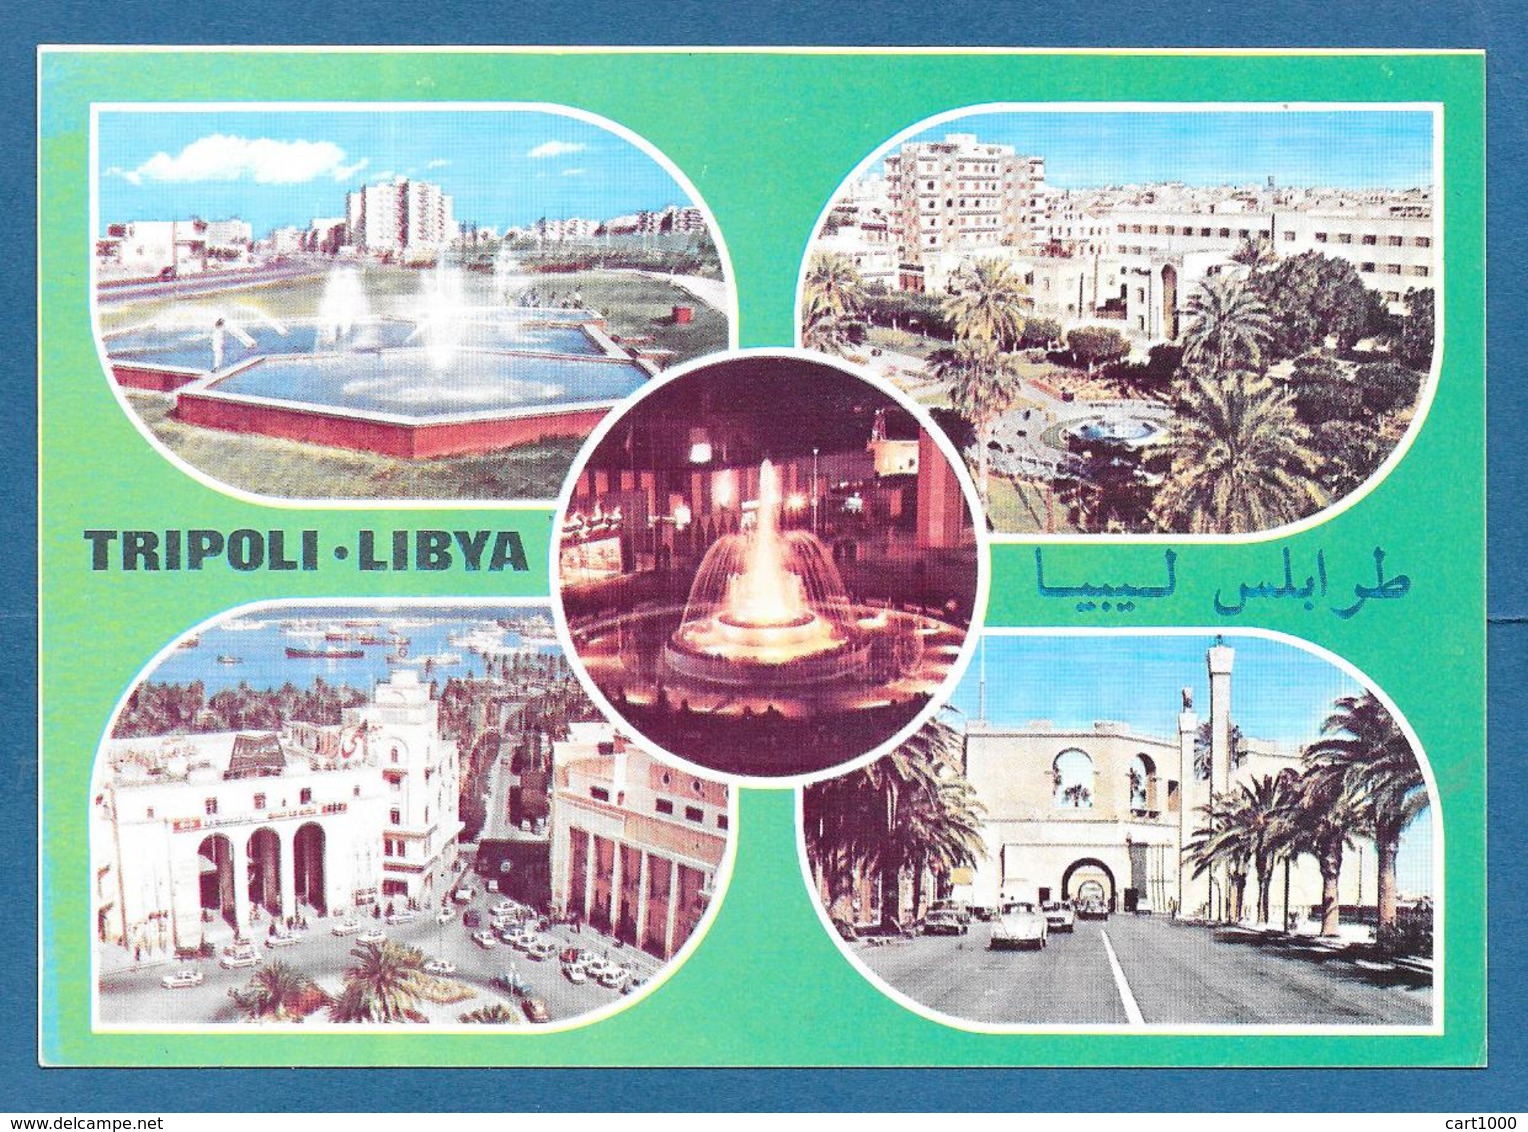 LIBIA LIBYA TRIPOLI - Libyen